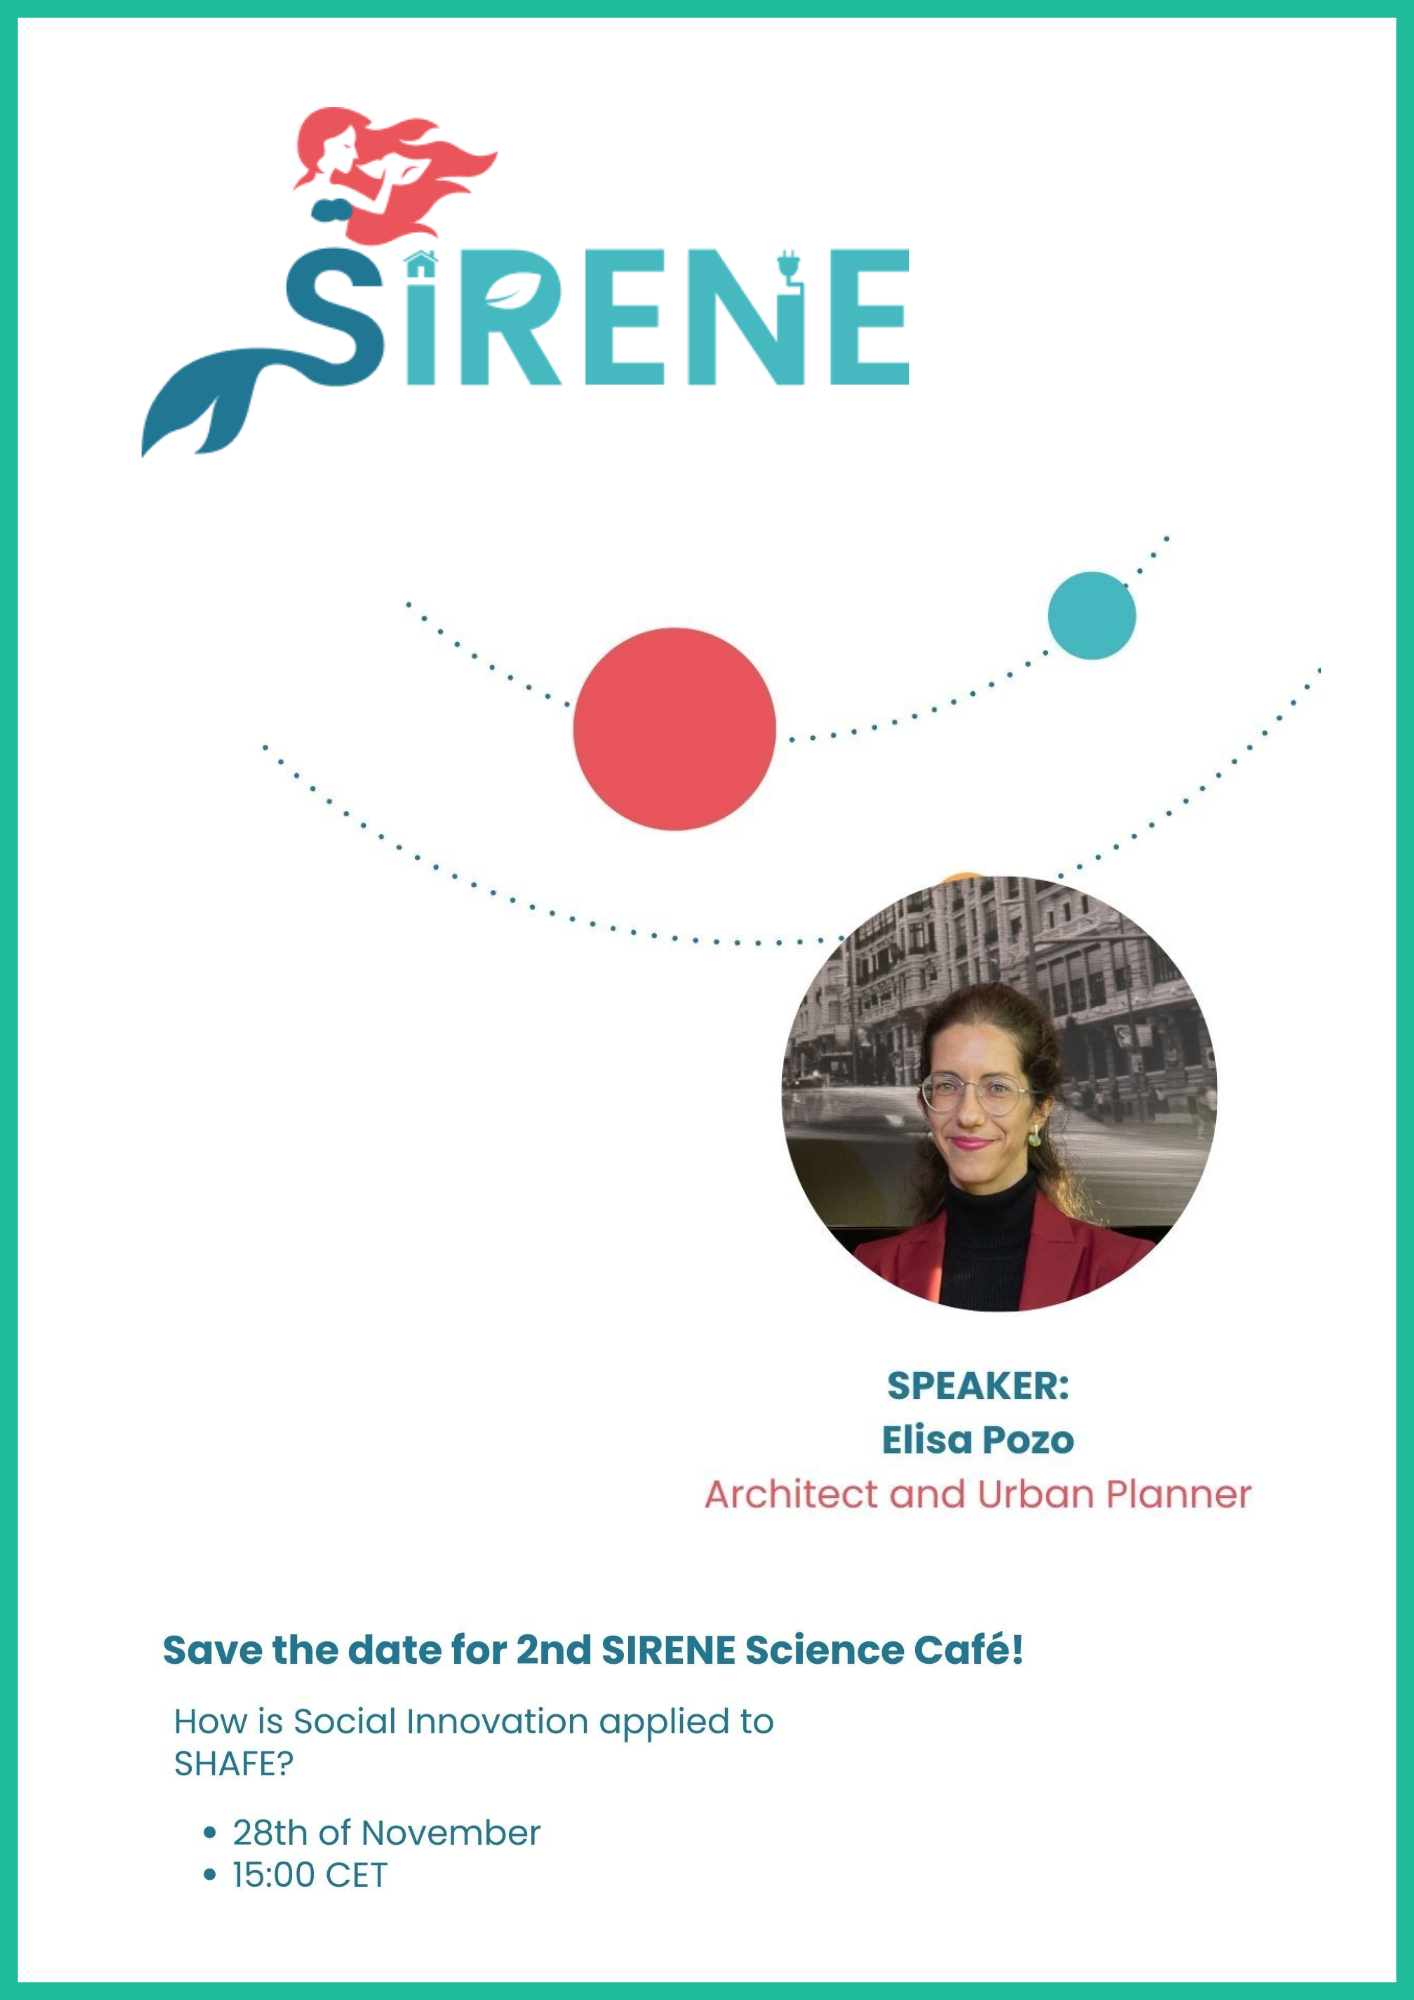 cartel anunciador evento Sirene